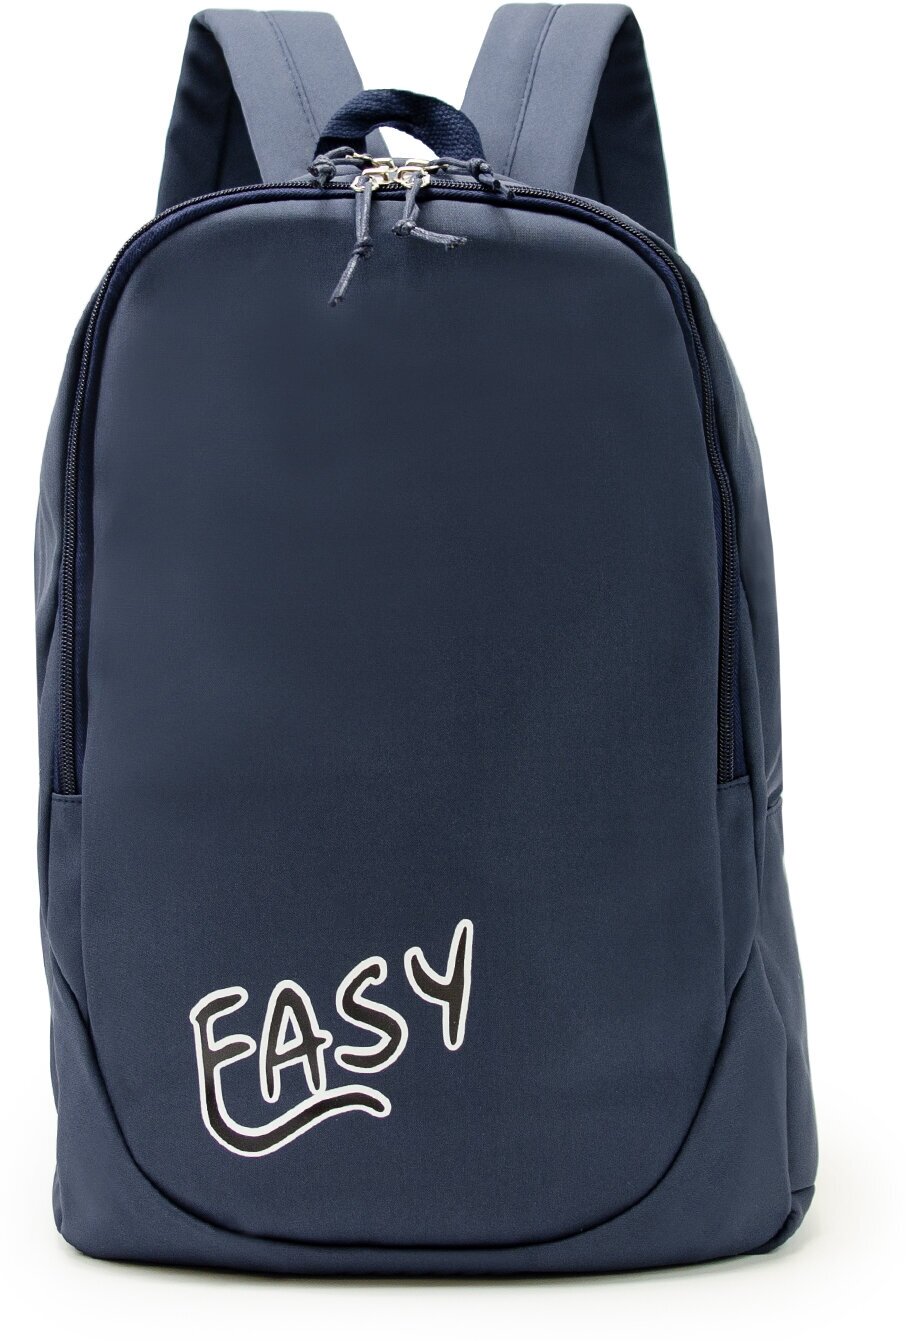 Рюкзак (синий) Just for fun мужской женский городской спортивный школьный повседневный офис для ноутбука туристический походный сумка ранец